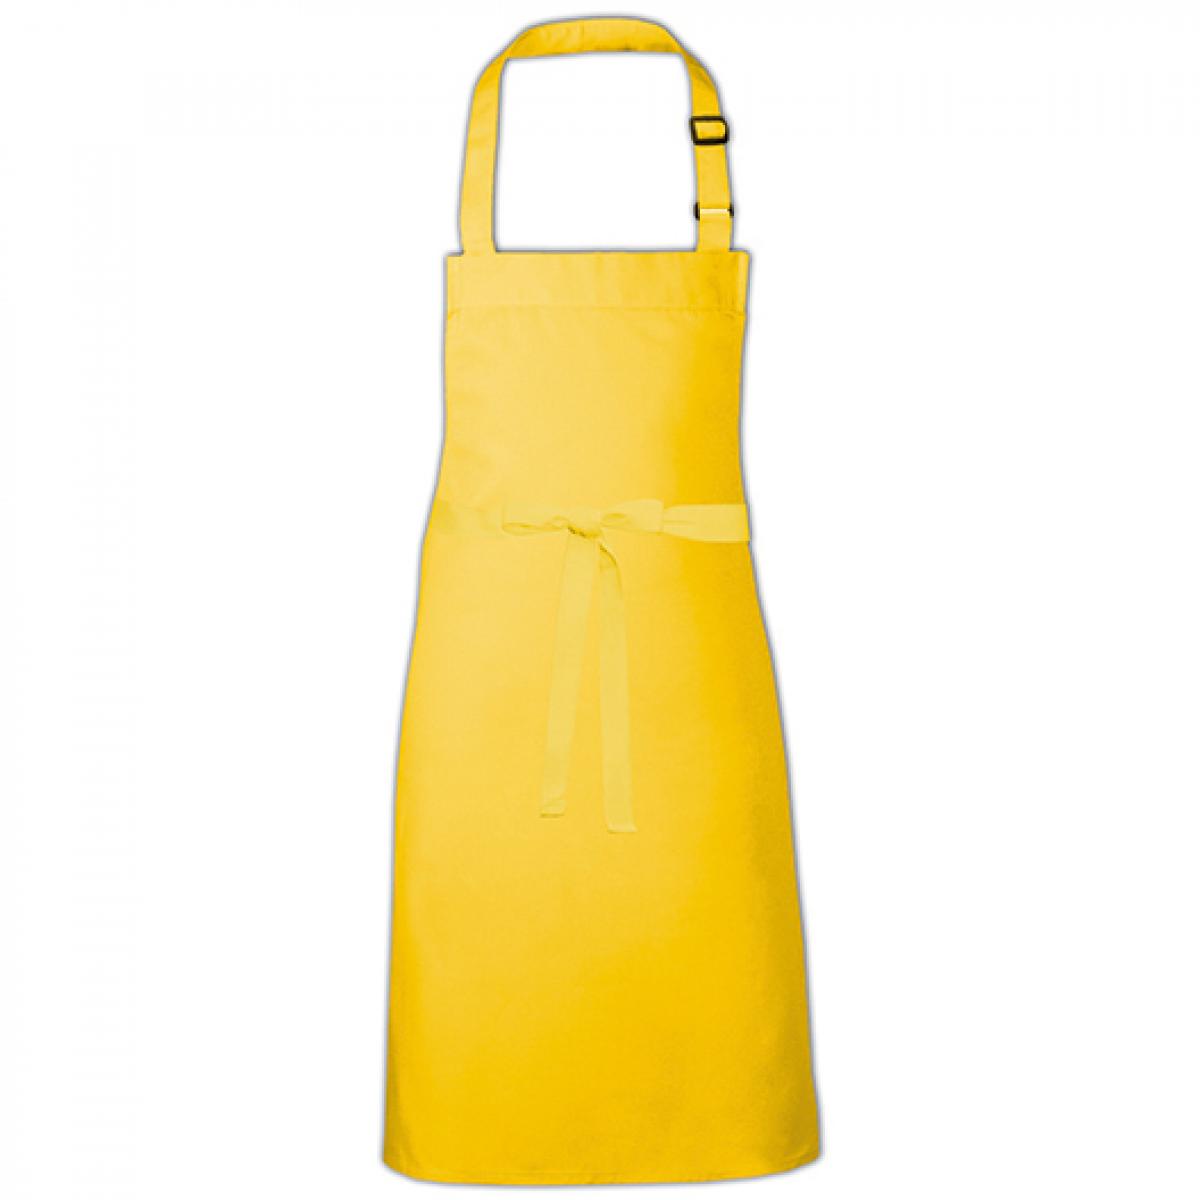 Hersteller: Link Kitchen Wear Herstellernummer: BBQ9073ADJ Artikelbezeichnung: Barbecue Apron adjustable 73 x 90 cm -  Waschbar bis 60 °C Farbe: Yellow